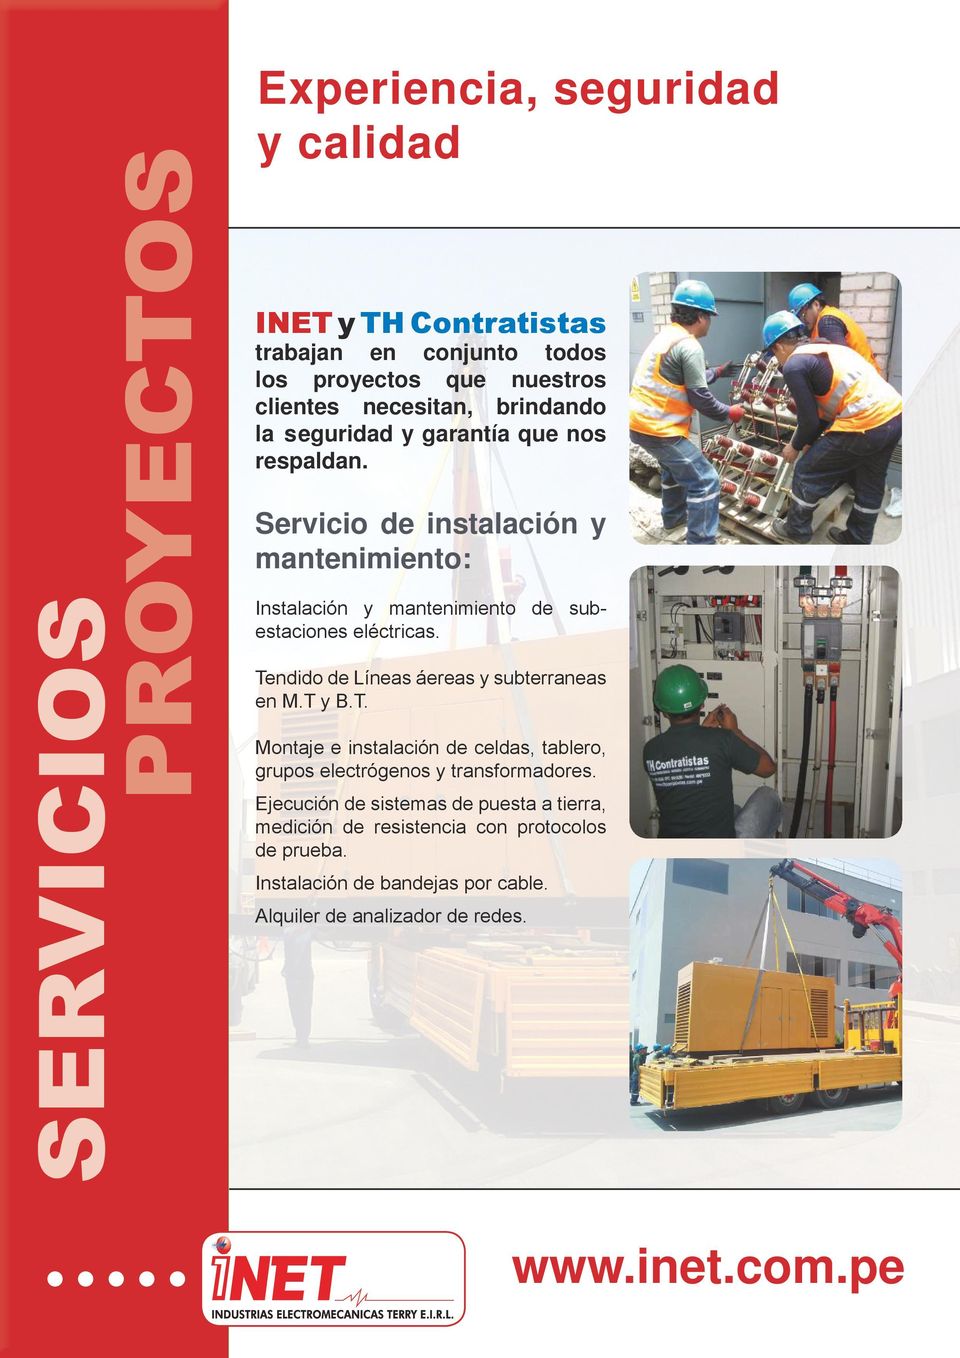 Servicio de instalación y mantenimiento: Instalación y mantenimiento de subestaciones eléctricas. Tendido de Líneas áereas y subterraneas en M.T y B.